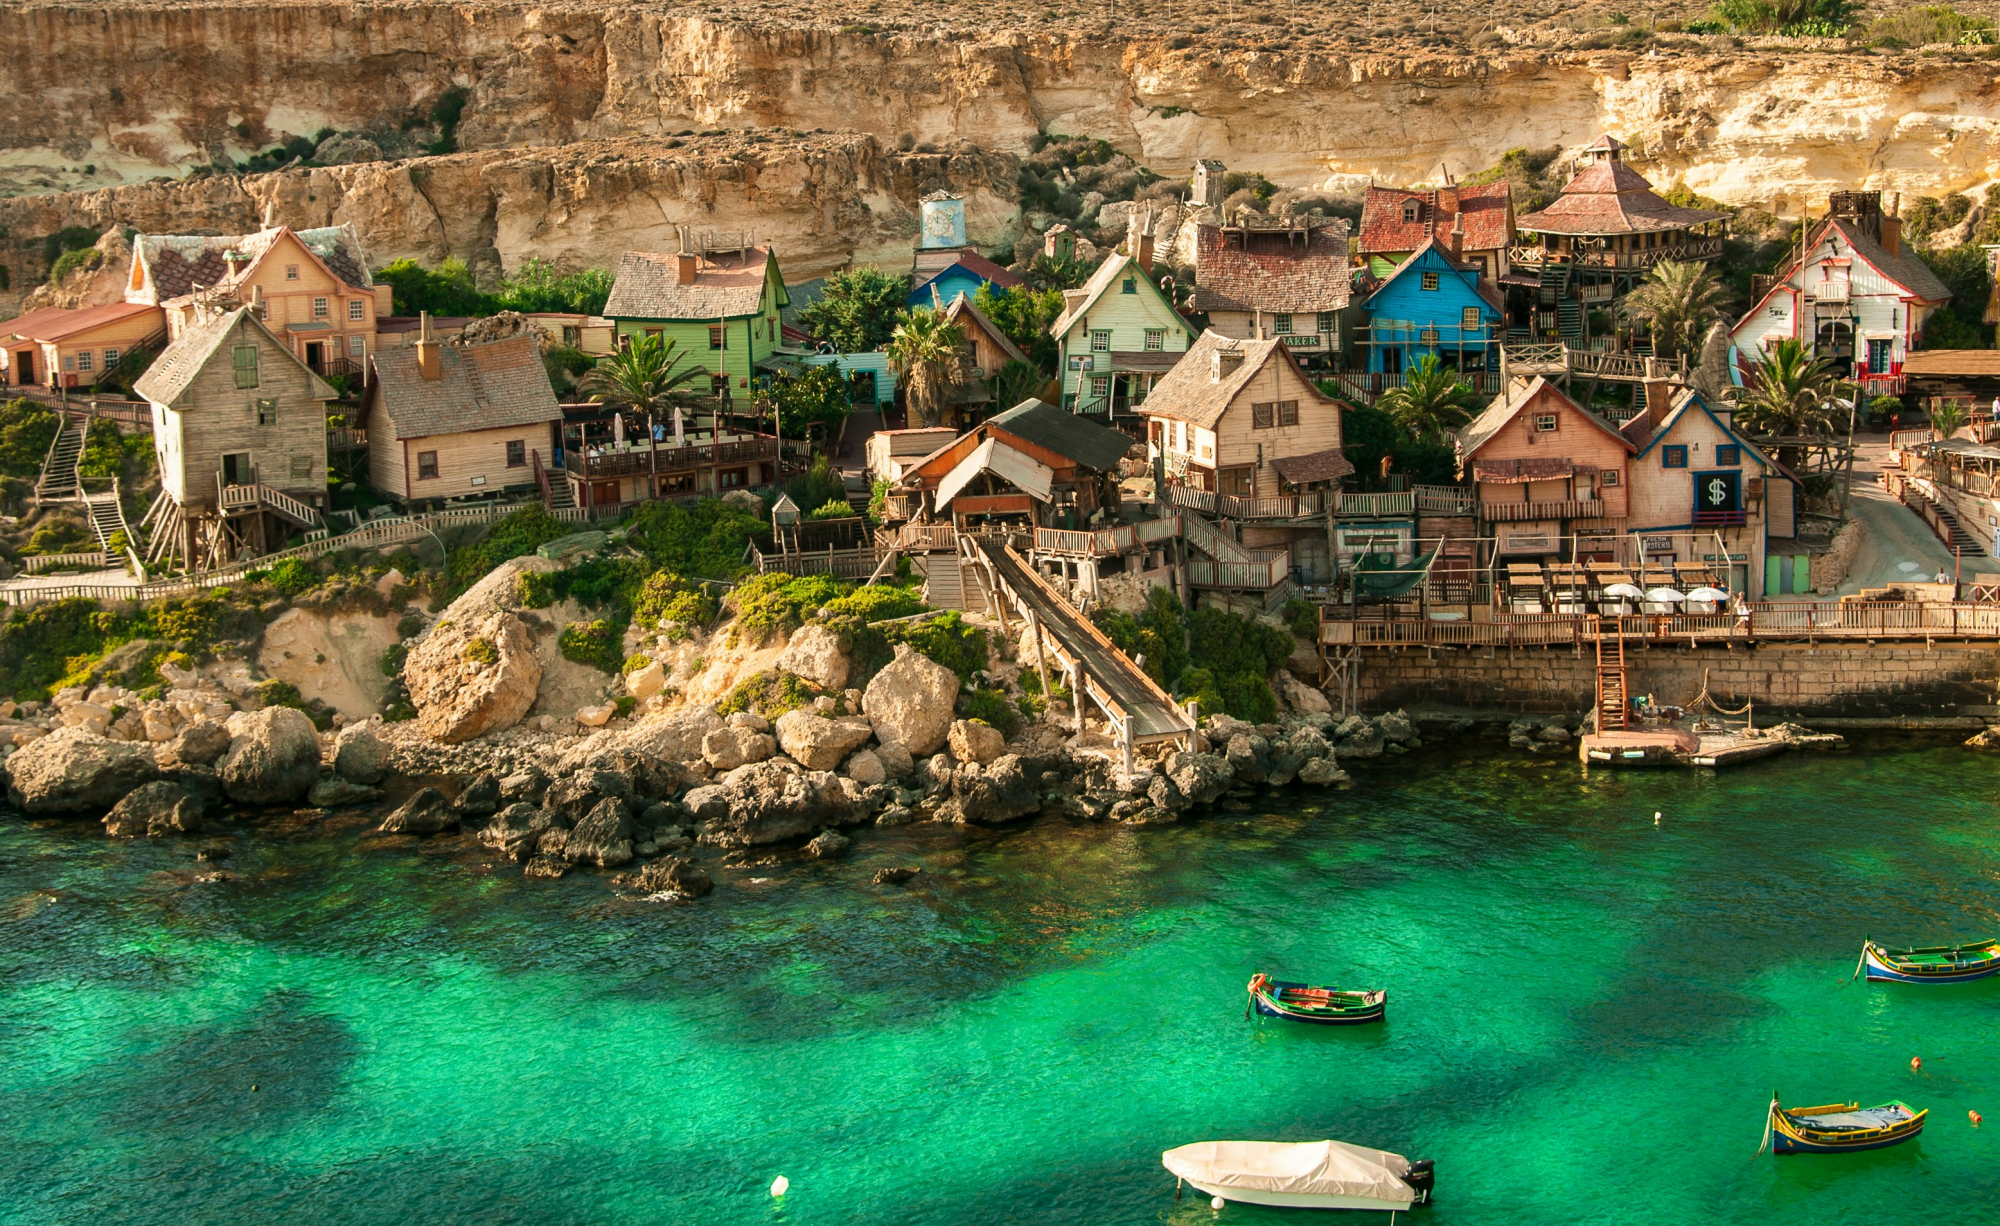 découvrez tout sur malte, son histoire fascinante, ses sites historiques, ses plages de rêve et sa culture unique. planifiez votre voyage à malte dès maintenant !